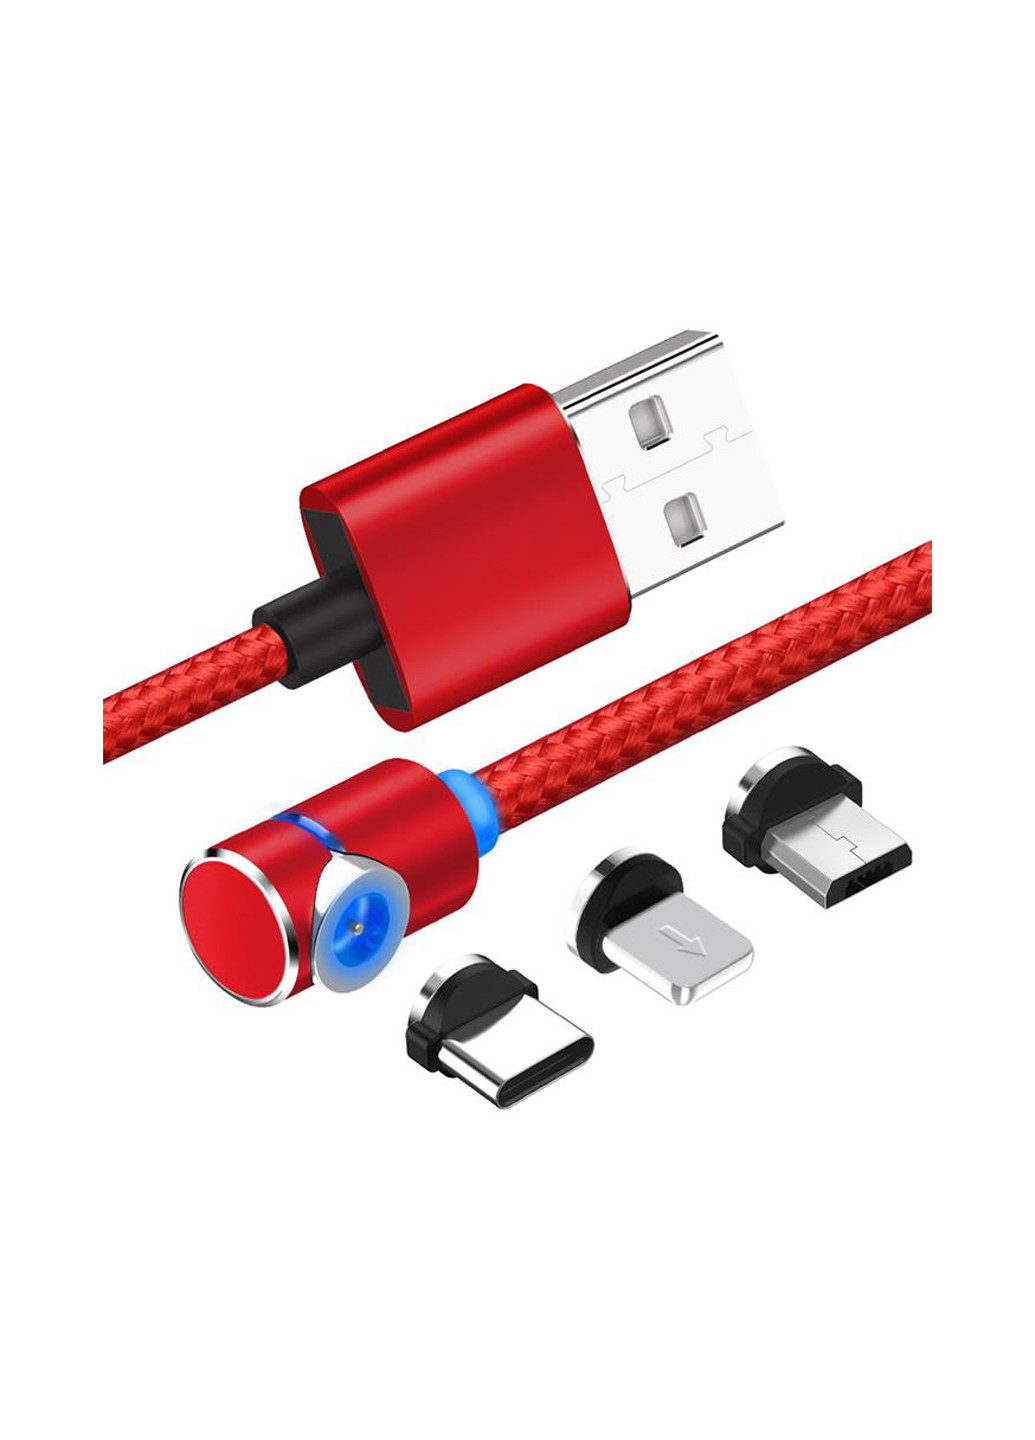 Магнитный кабель USB SC-370 Magneto Game Red 3 в 1 - Lightning, Micro USB, Type-C 1 м (SC-370MGNT-RD) XoKo sc-370 магнитный кабель 3 в 1 - lightning, micro usb, type-c (132572873)